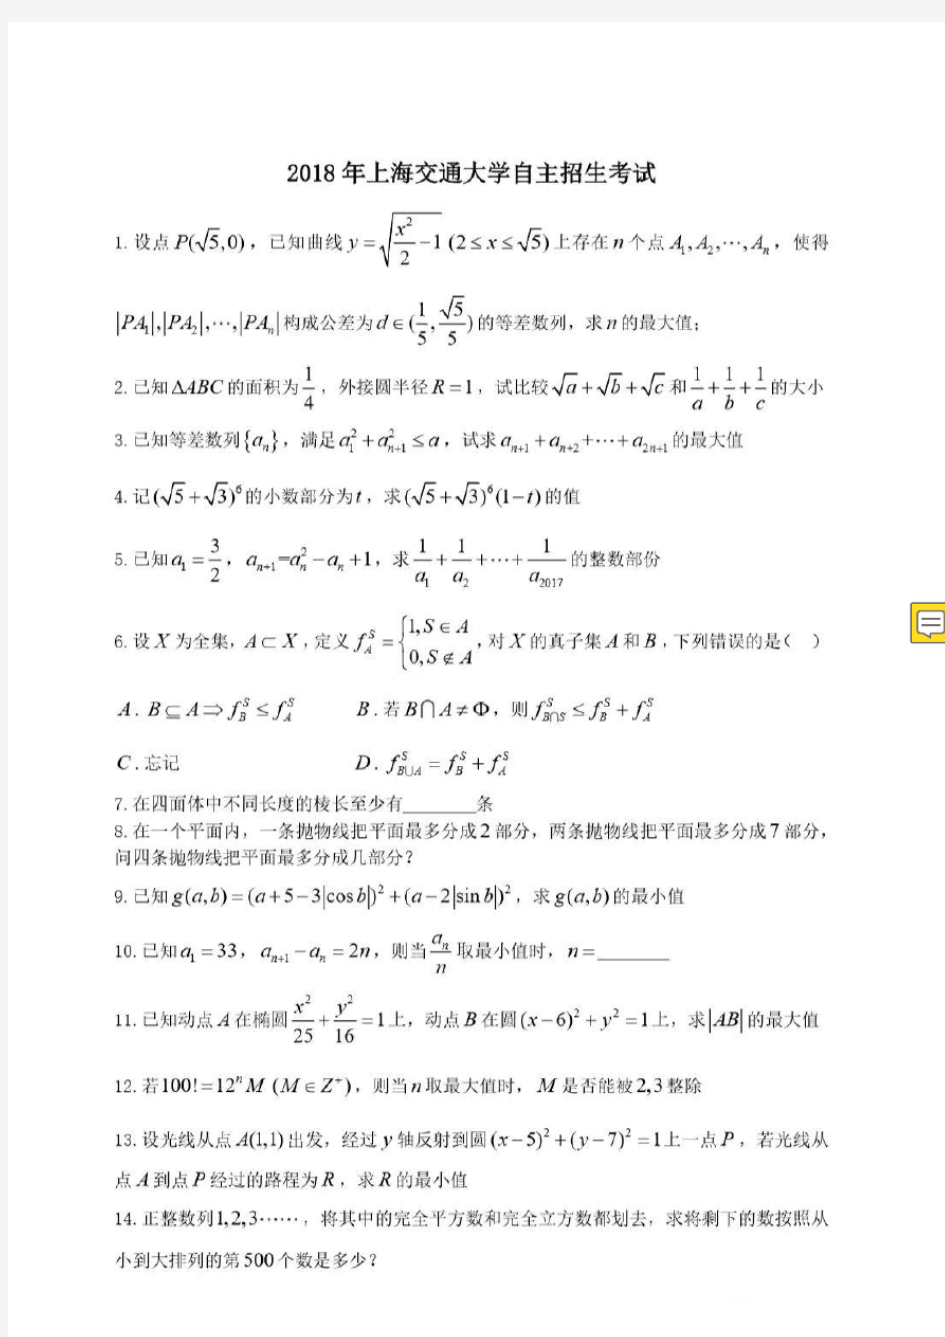 上海交通大学自主招生考试数学试题(含答案)